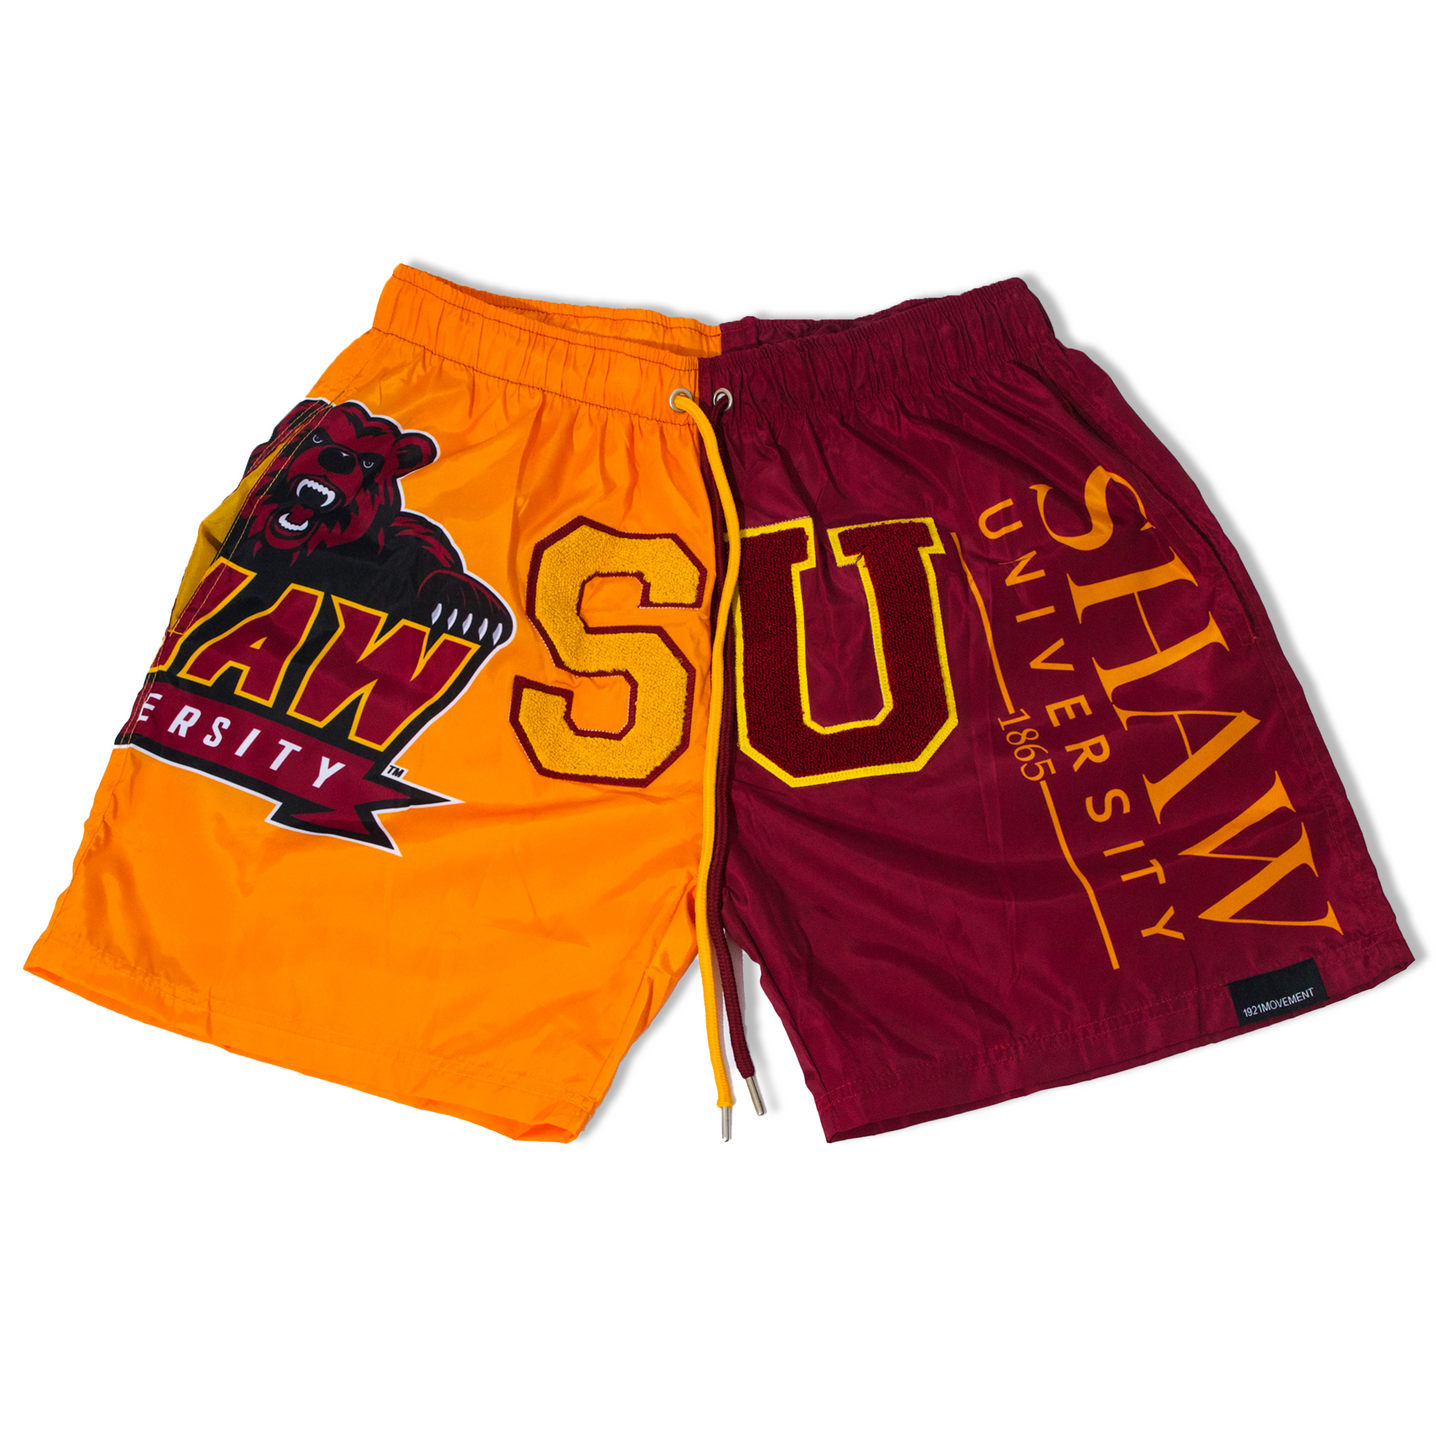 Shaw University Shorts